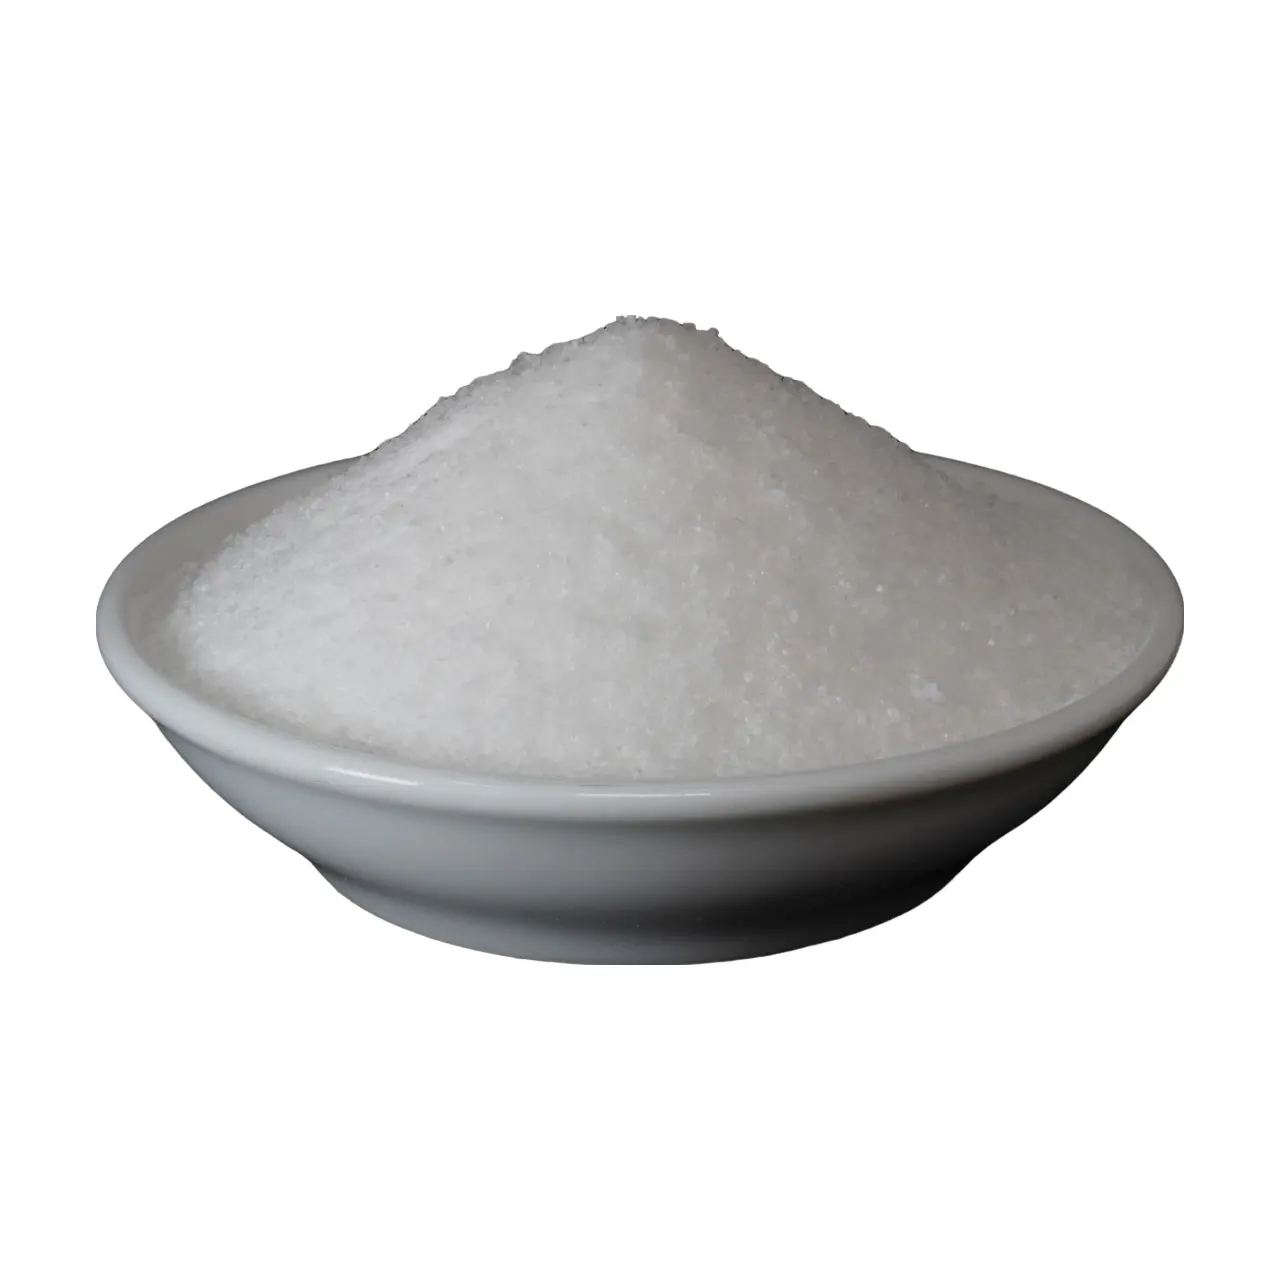 Pupuk folien NPK-mikronutrien asli Vietnam (11-0-40) pupuk senyawa Granular kualitas tinggi